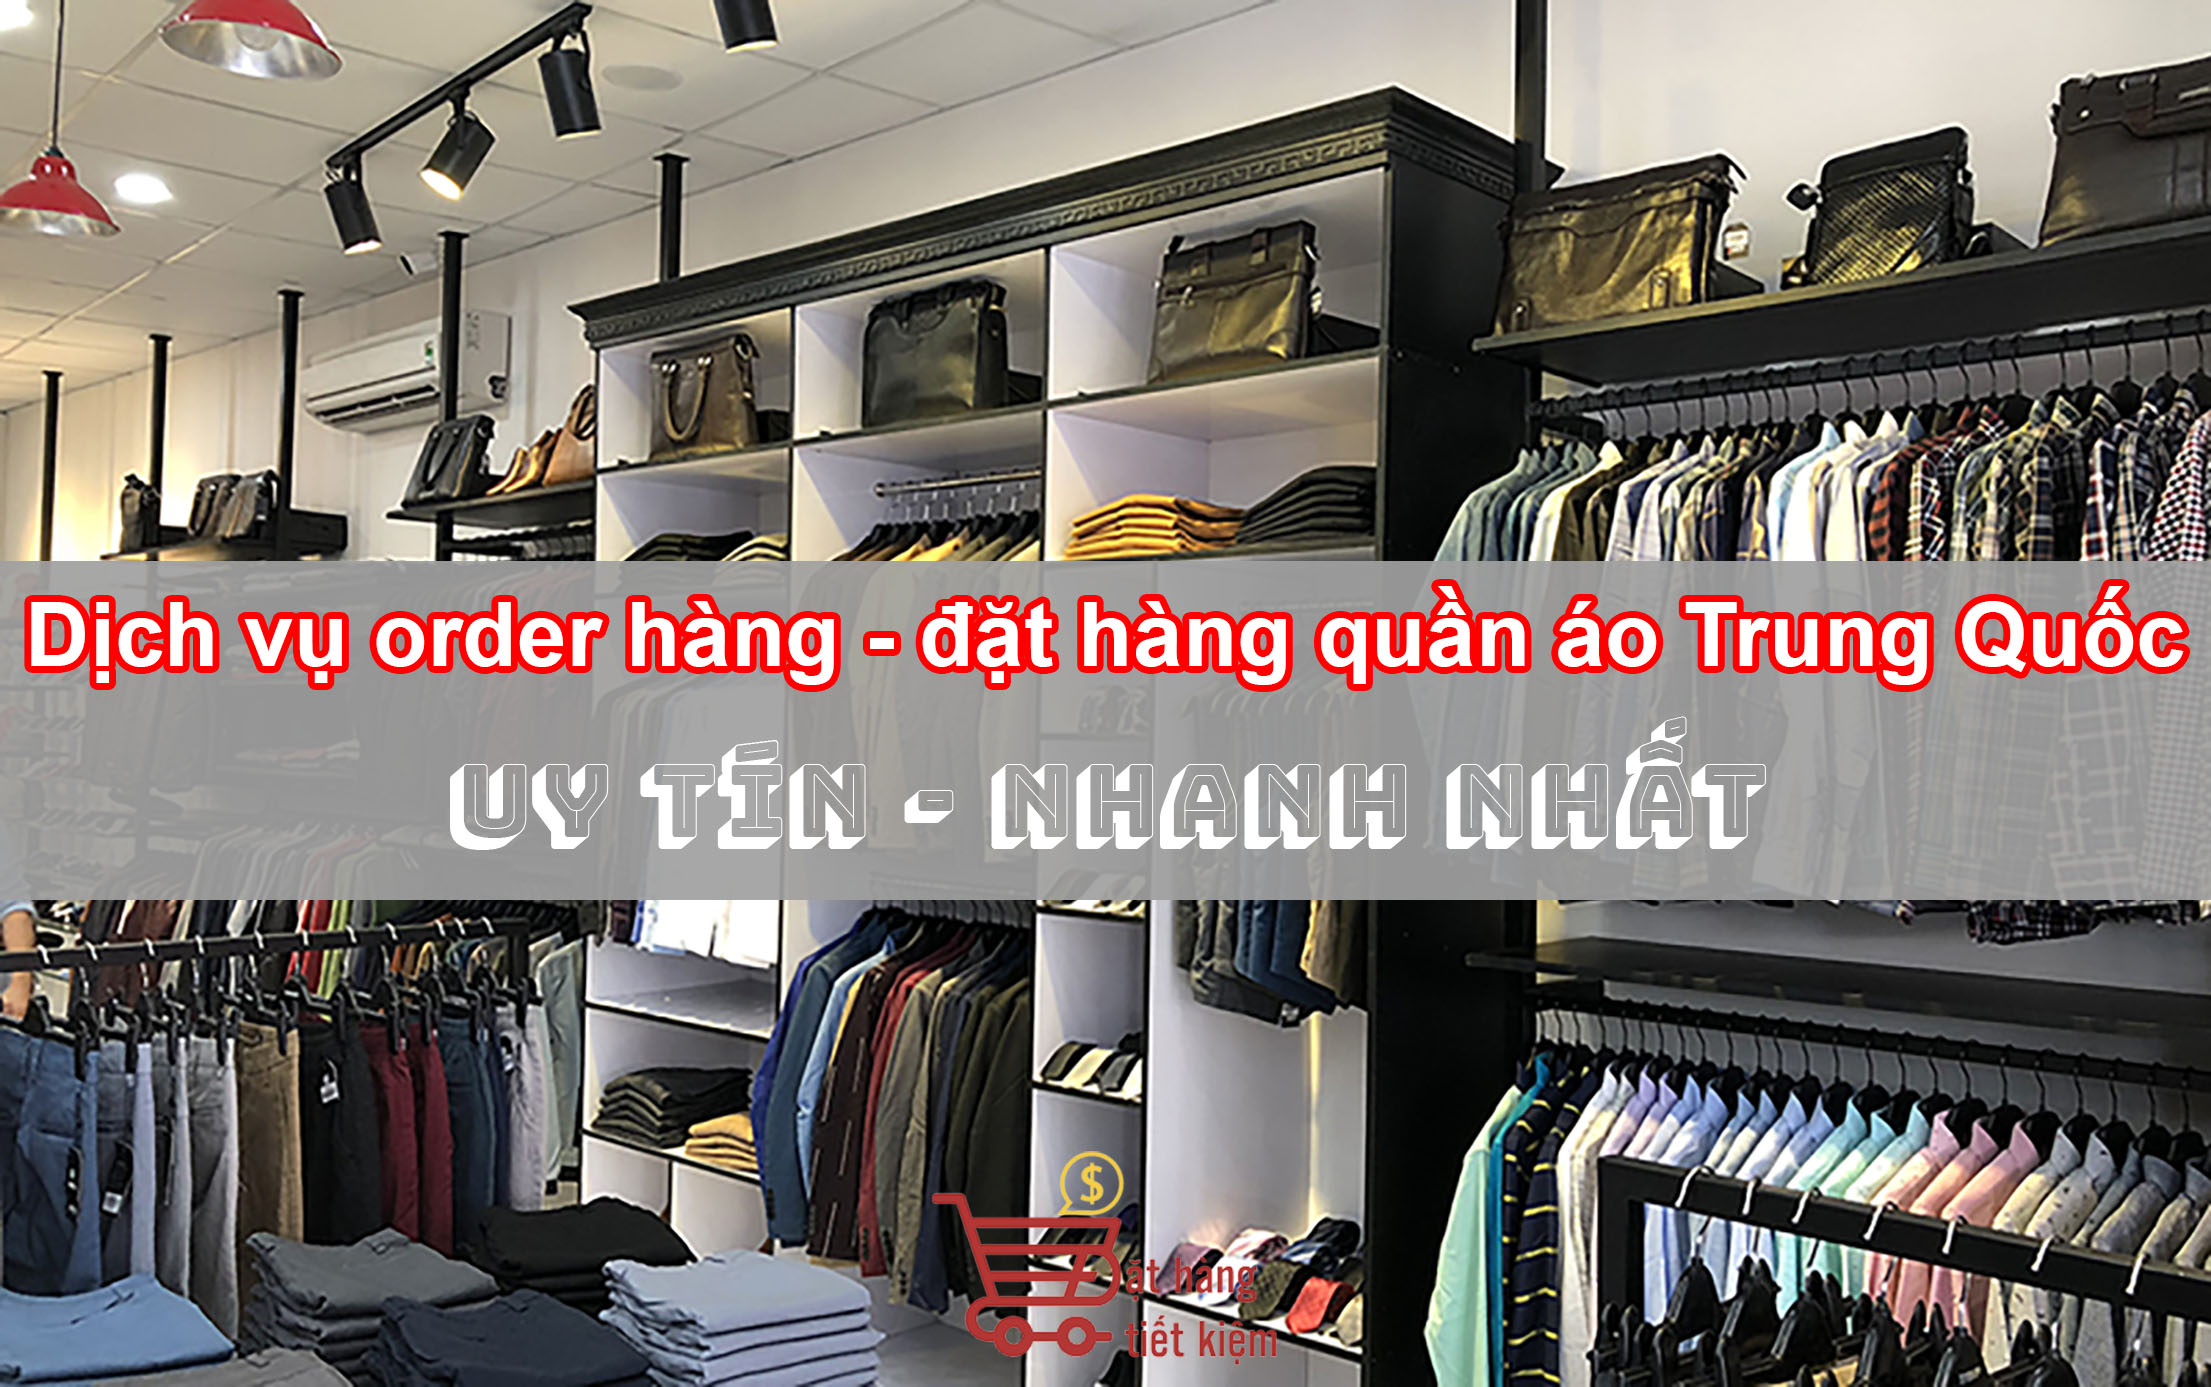 Dịch vụ order hàng-đặt hàng quần áo Trung Quốc uy tín nhanh nhất